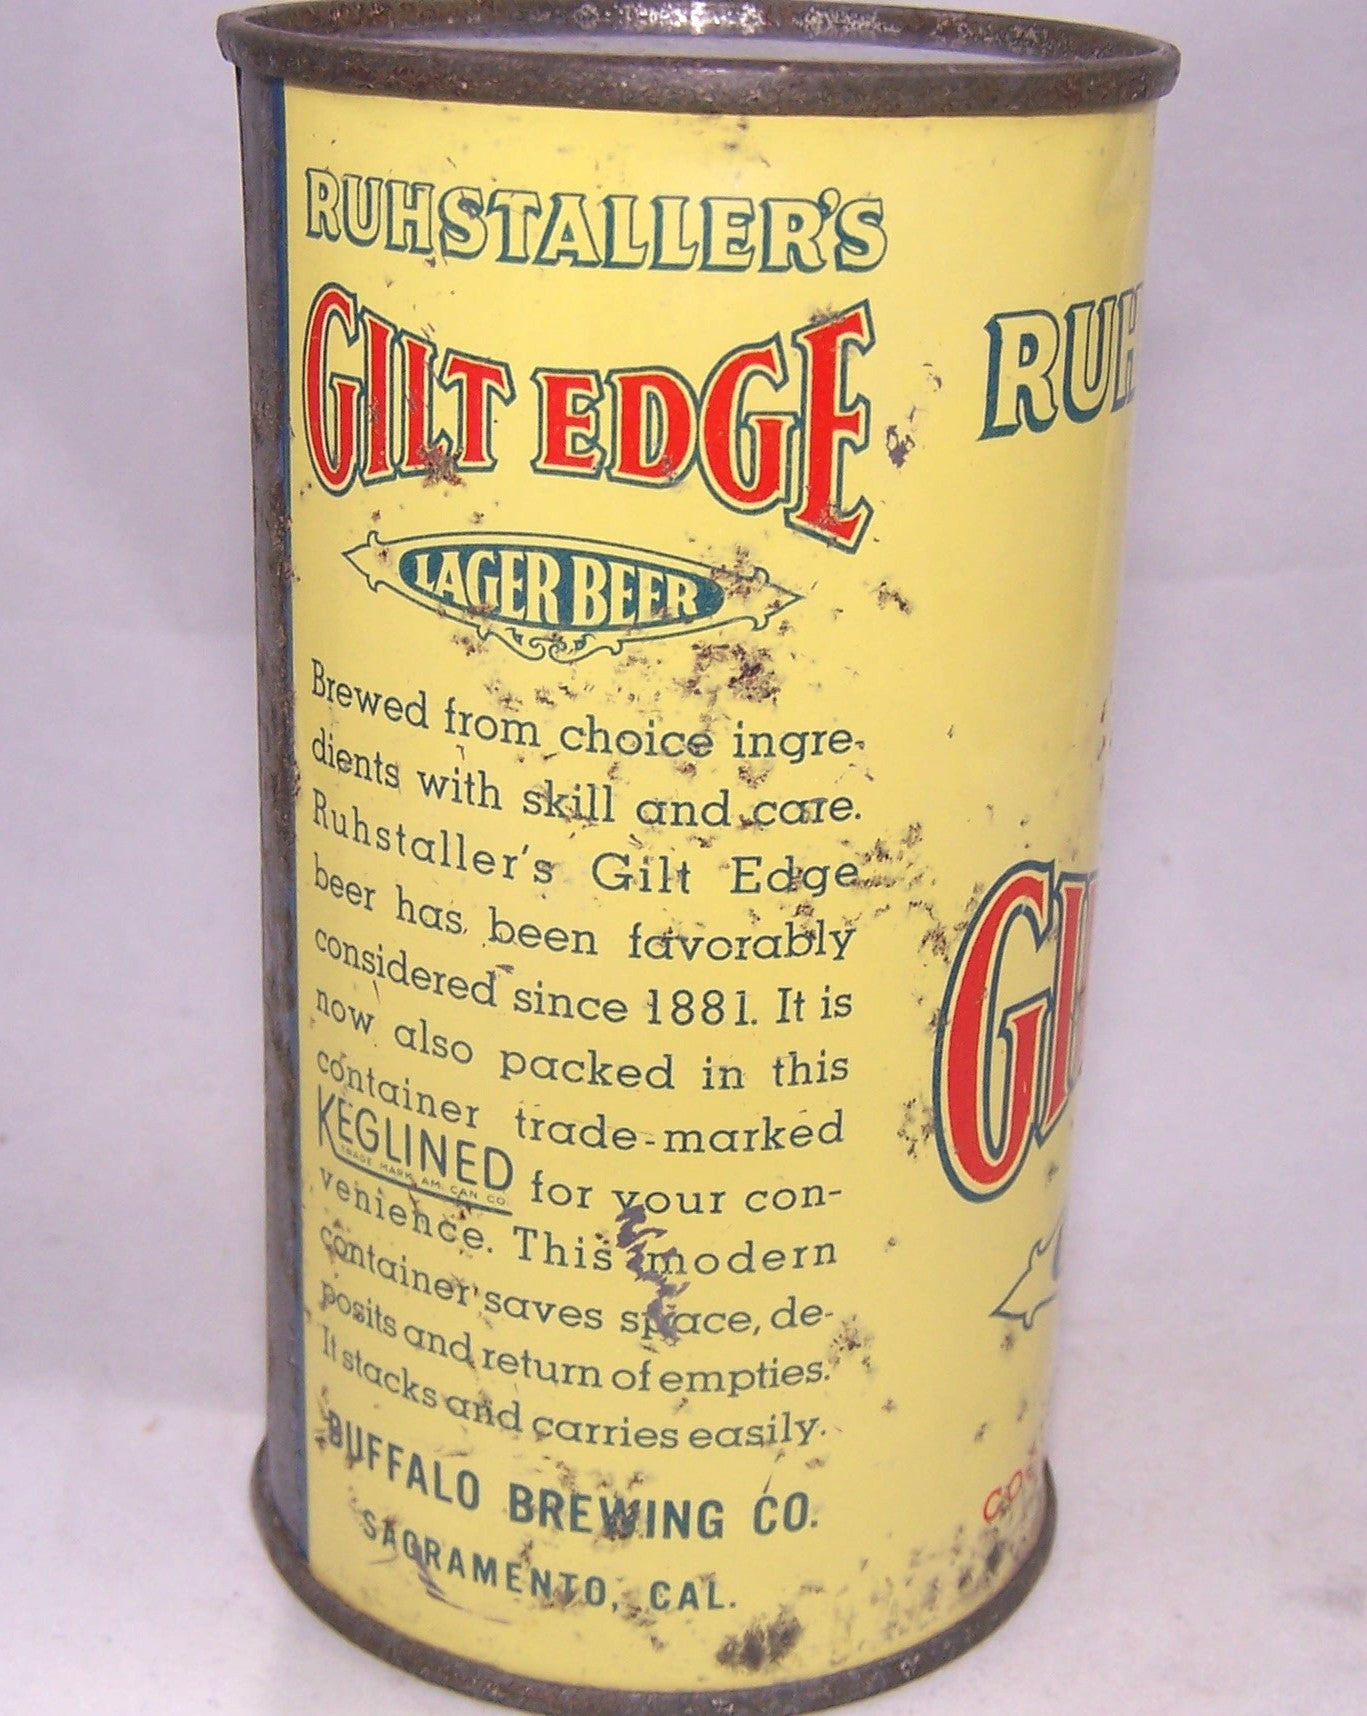 Ruhstaller's Gilt Edge Lager Beer, Lilek #336, Grade 2/2+ Sold 11/19/16